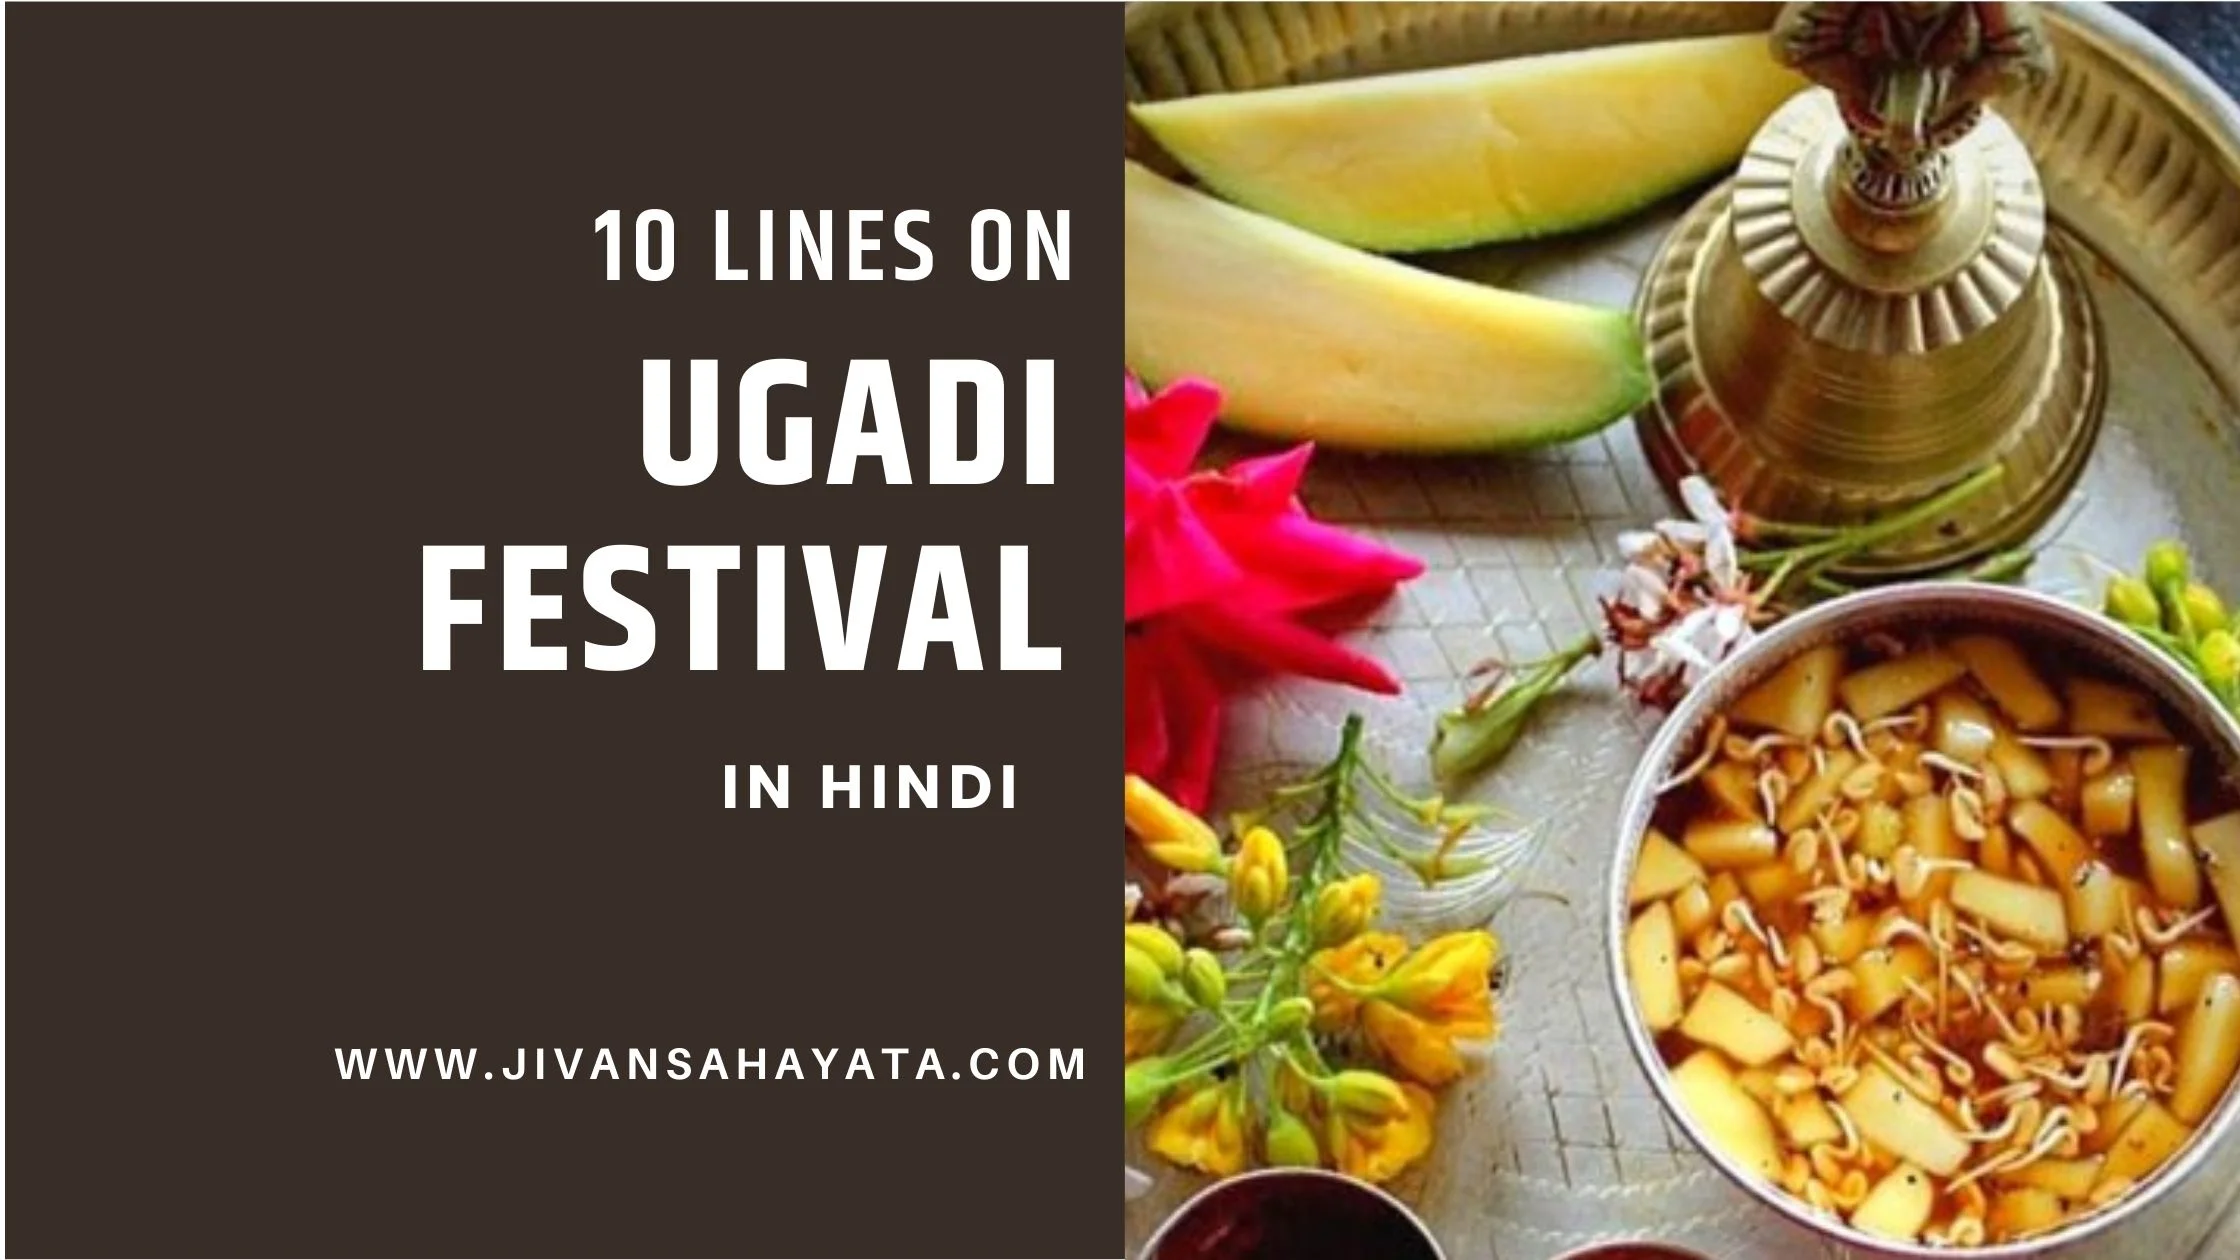 10 lines on Ugadi festival in Hindi - उगादी त्यौहार पर शॉर्ट निबंध